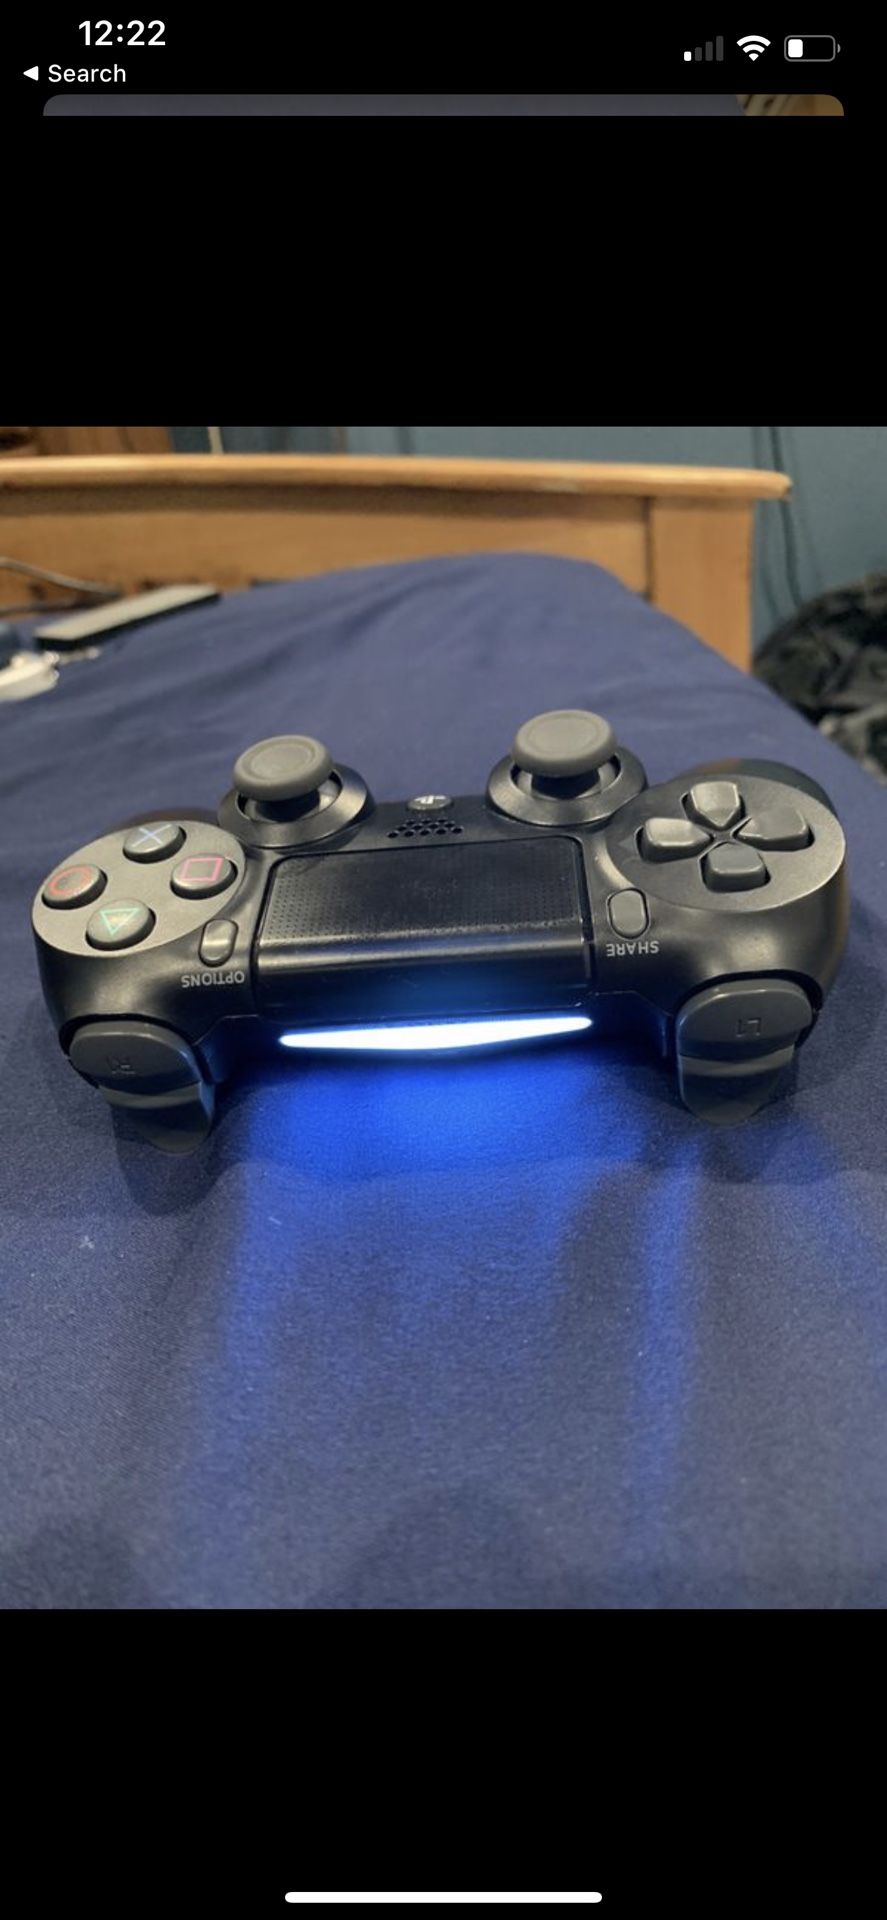 PlayStation 4 control